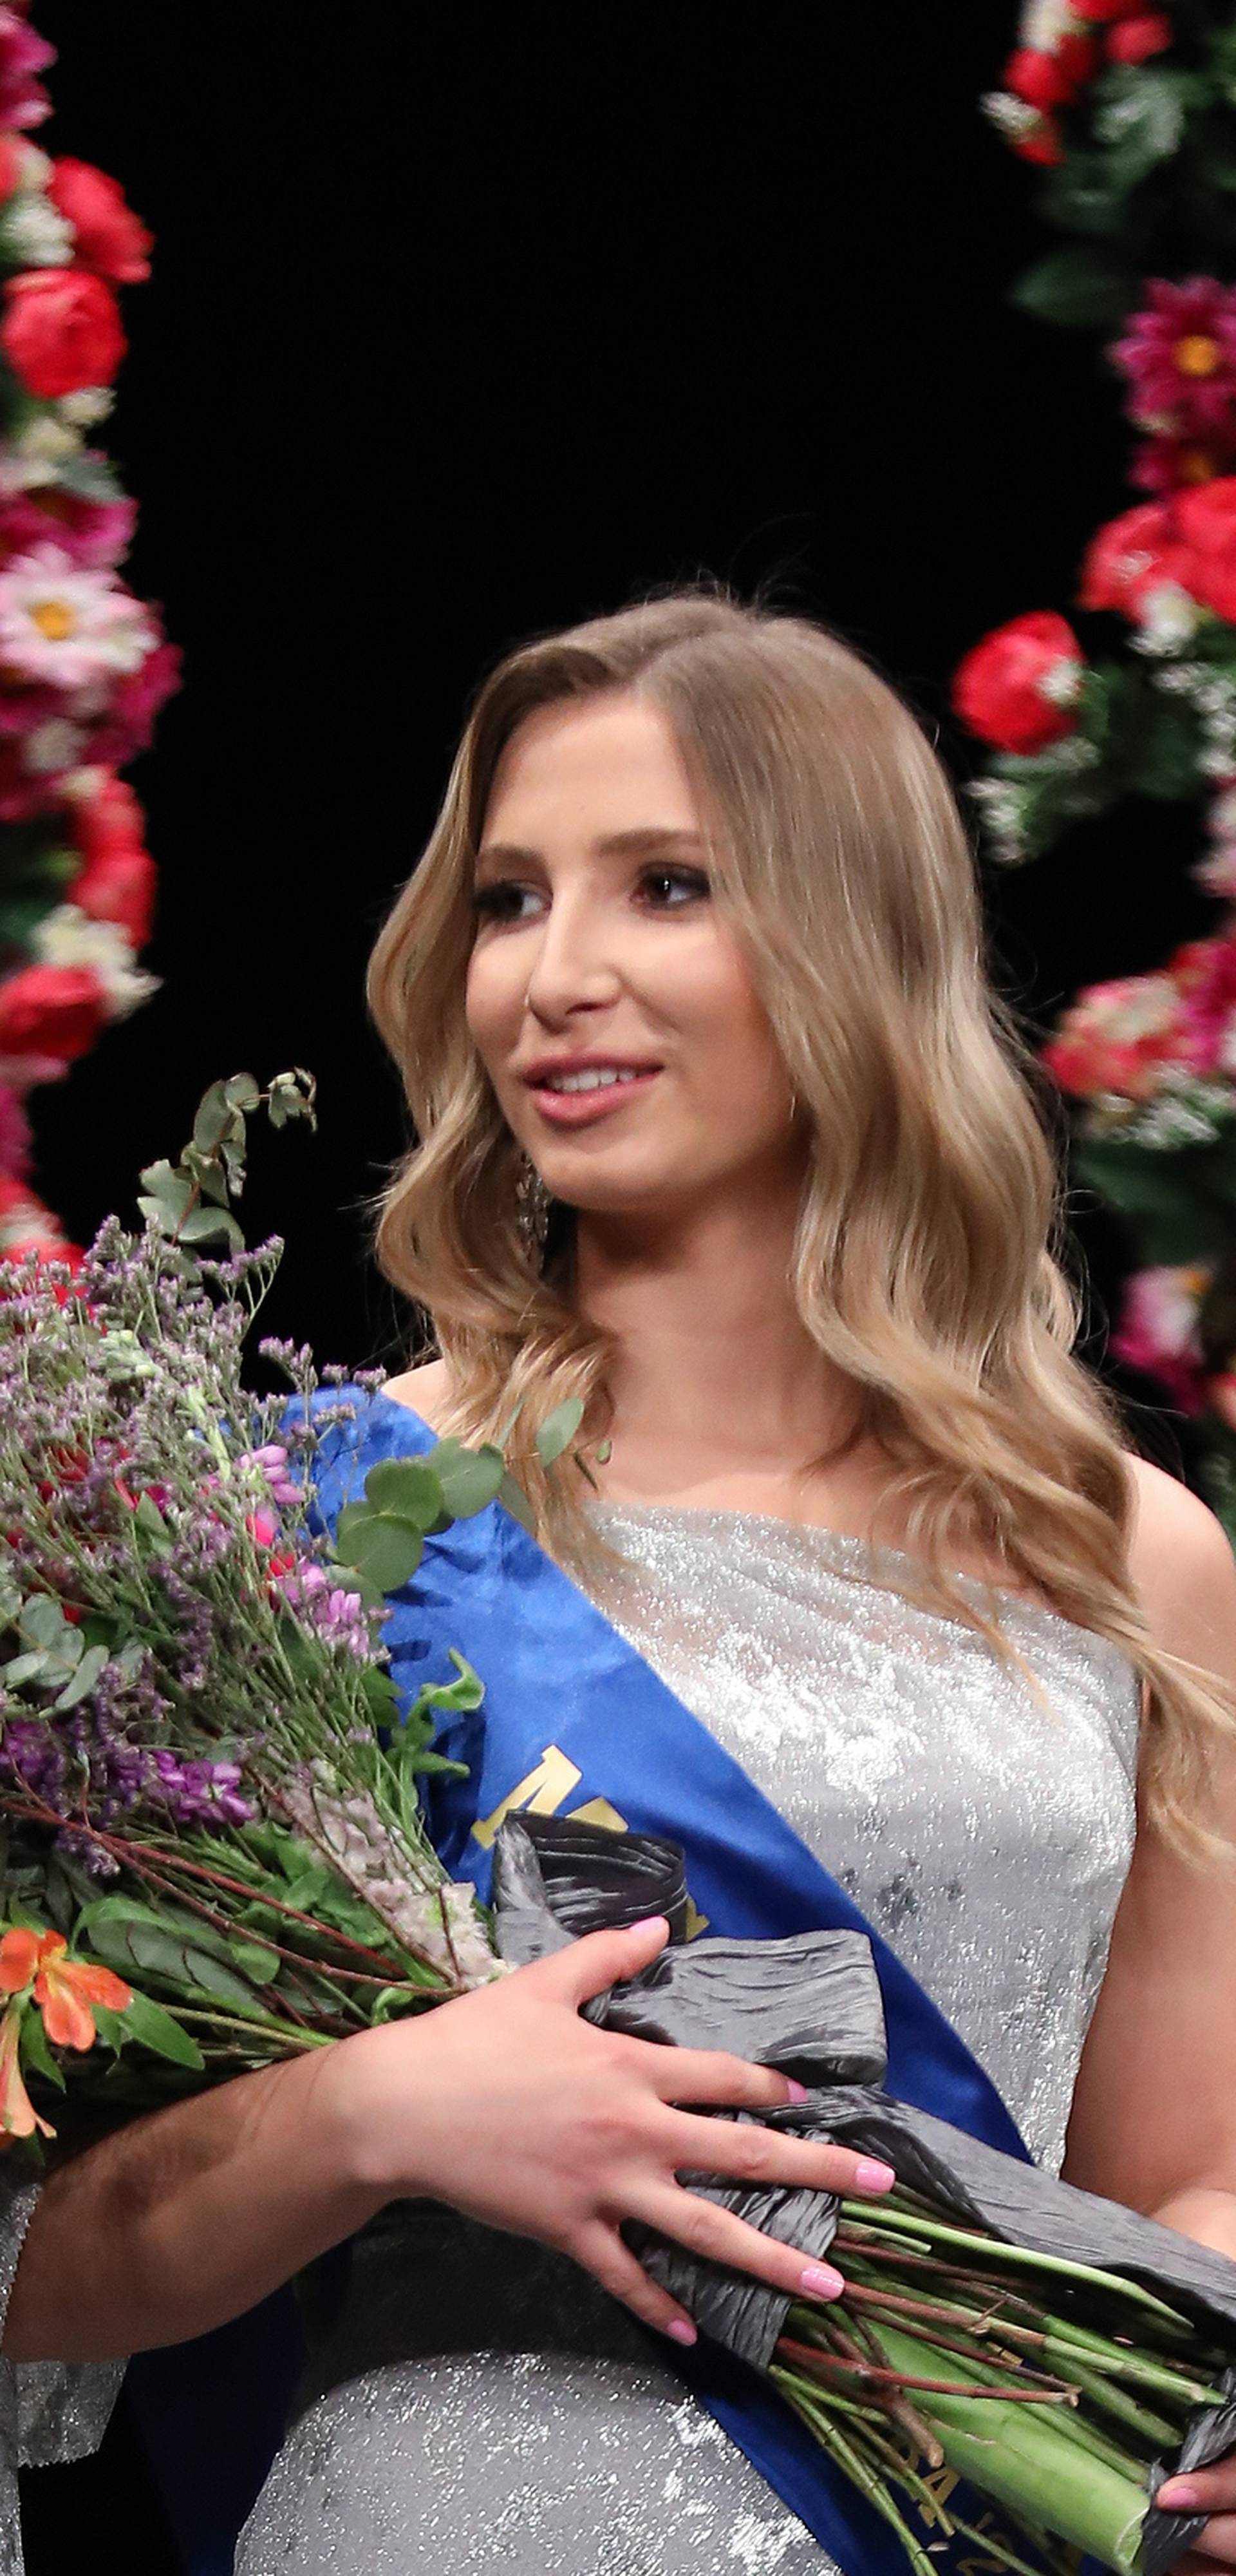 Marinela Grljušić nova je Miss Supranational Zagreba i Zagrebačke županije